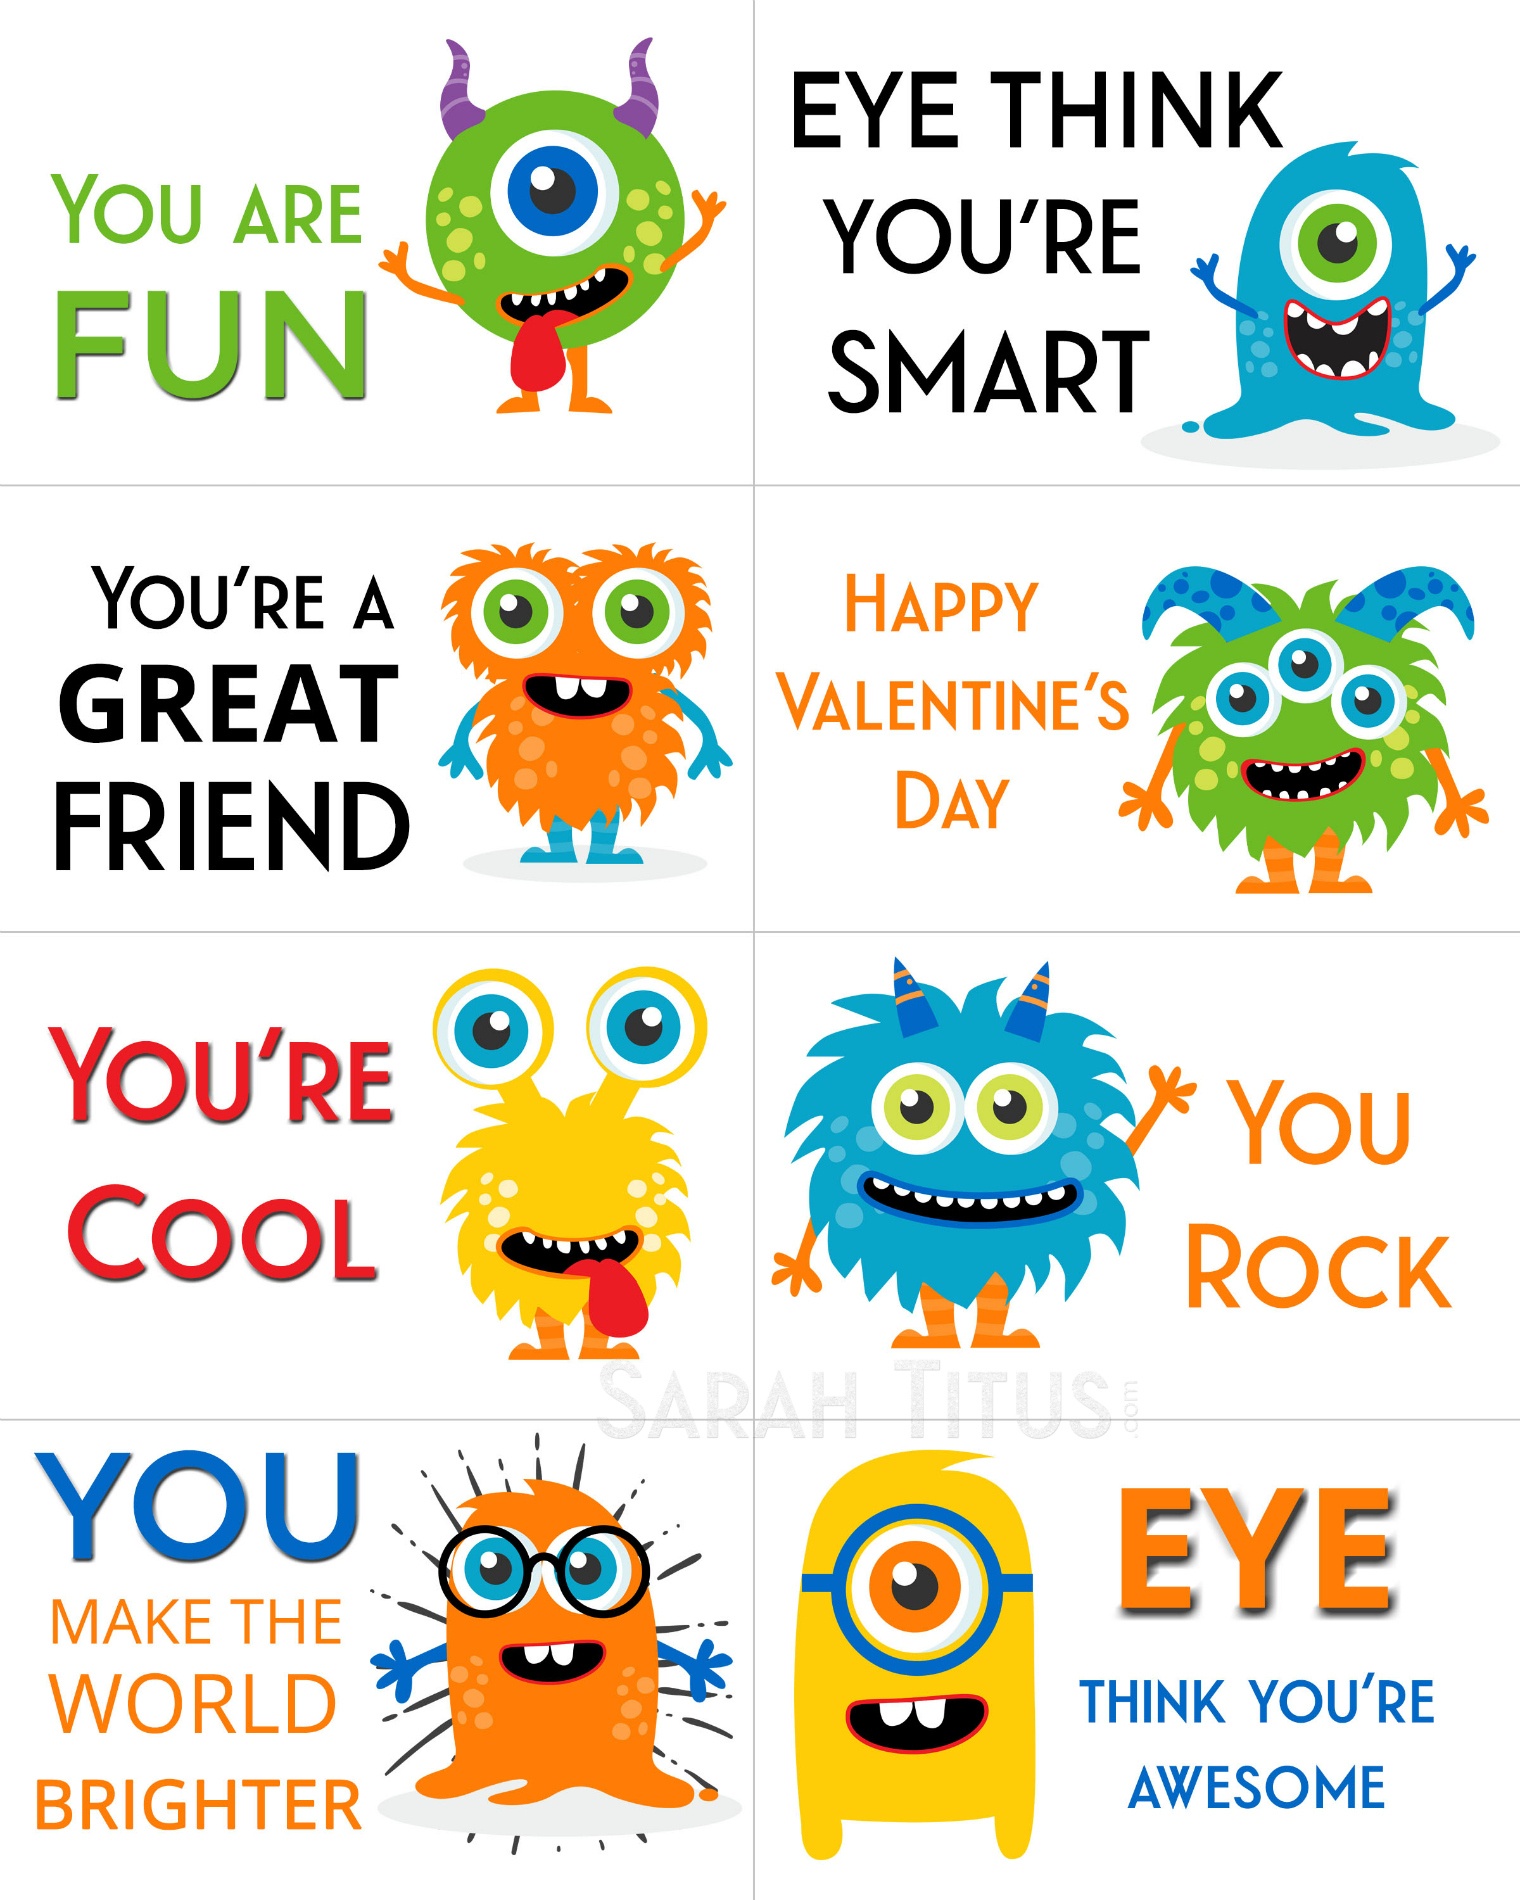 Free Printable Valentine Cards - Sarah Titus - Free Printable Valentine Cards For Preschoolers